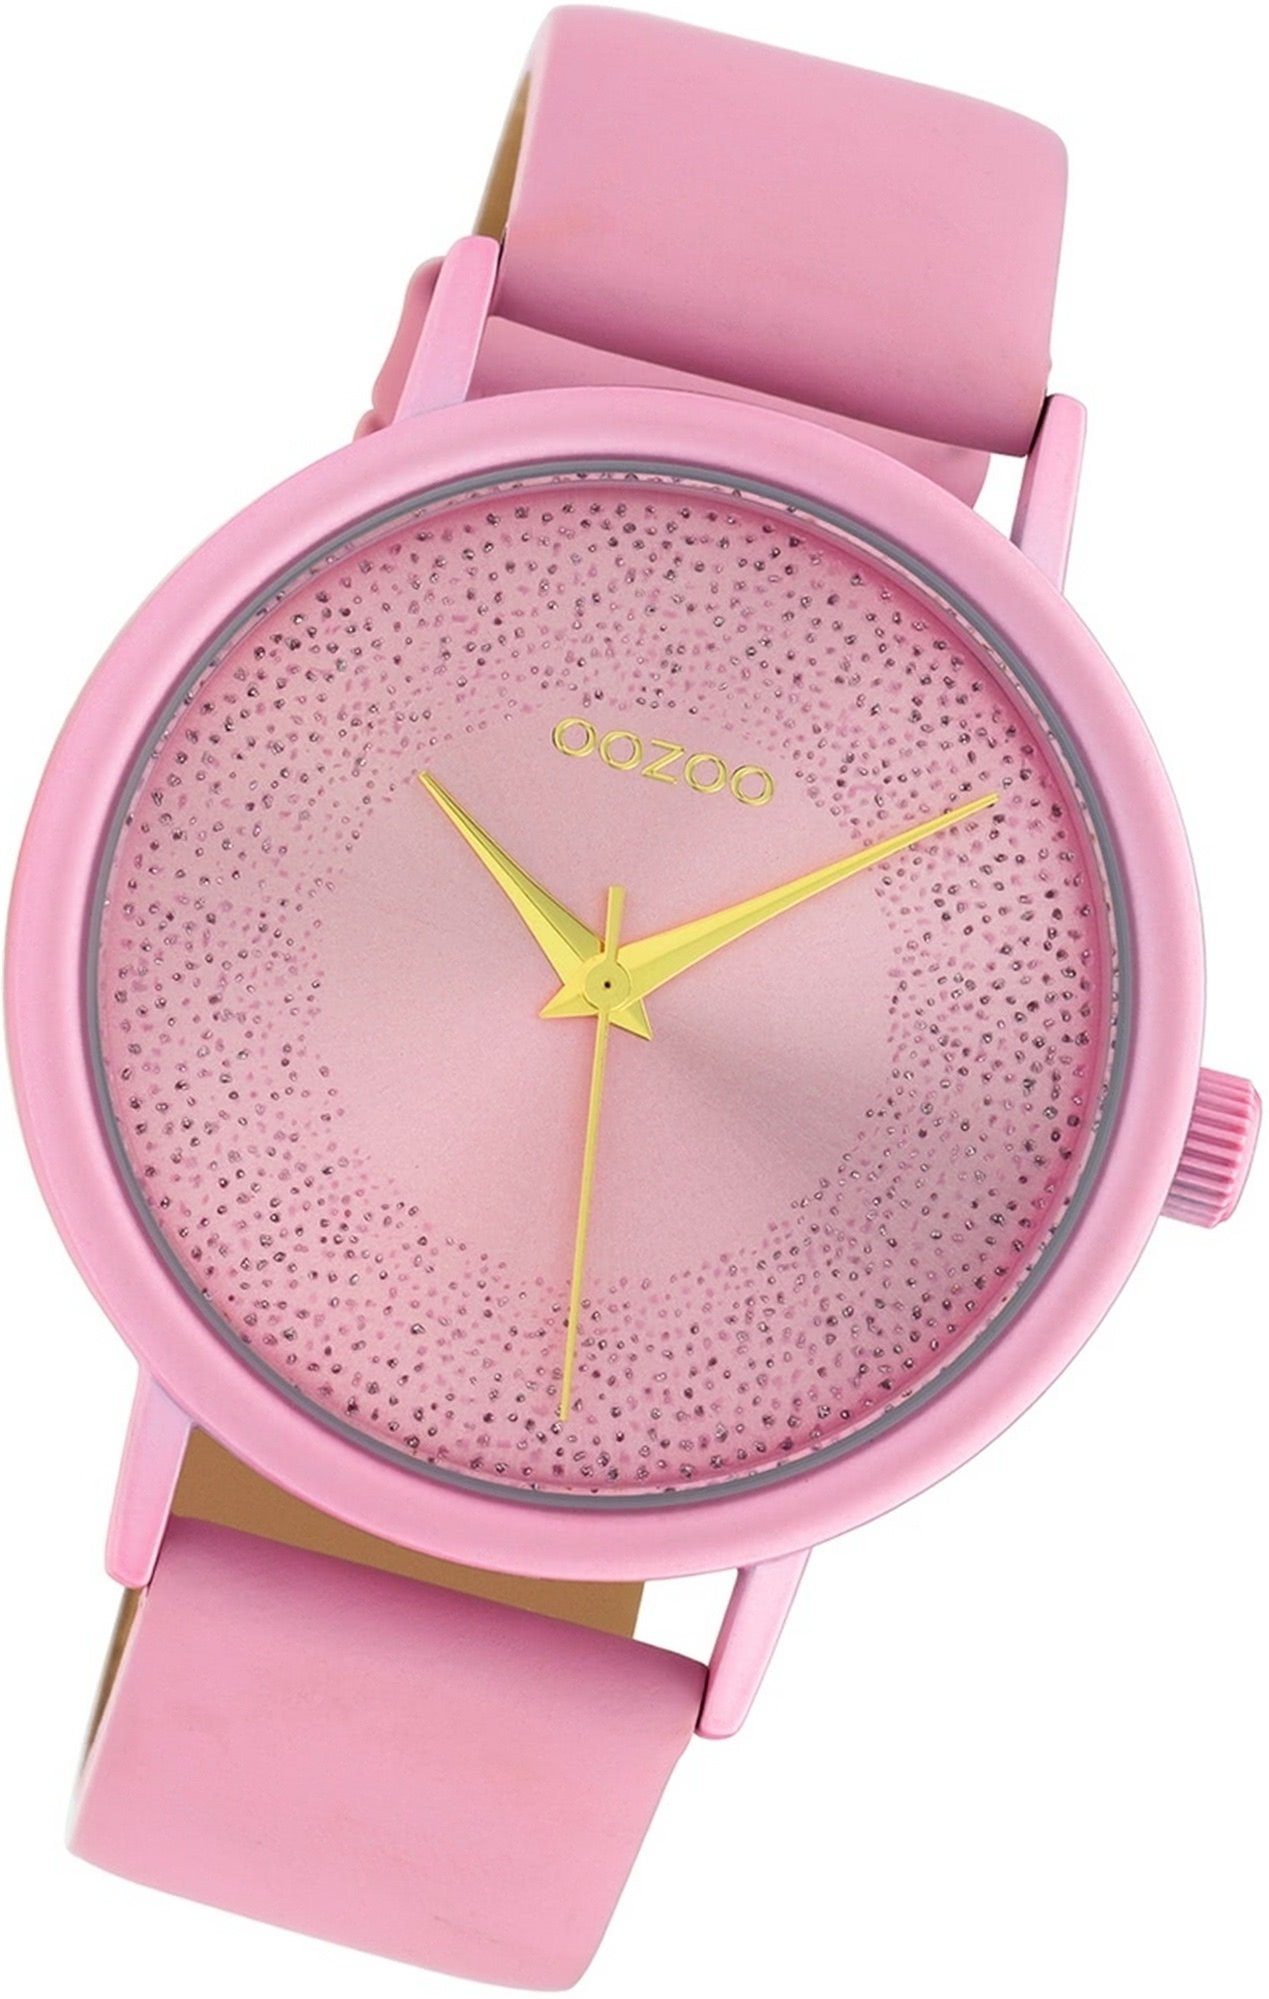 Uhr Leder Gehäuse, (ca. OOZOO Analog, rosa, Damenuhr Damen Oozoo 42mm) Lederarmband C10579 groß Quarzuhr rundes